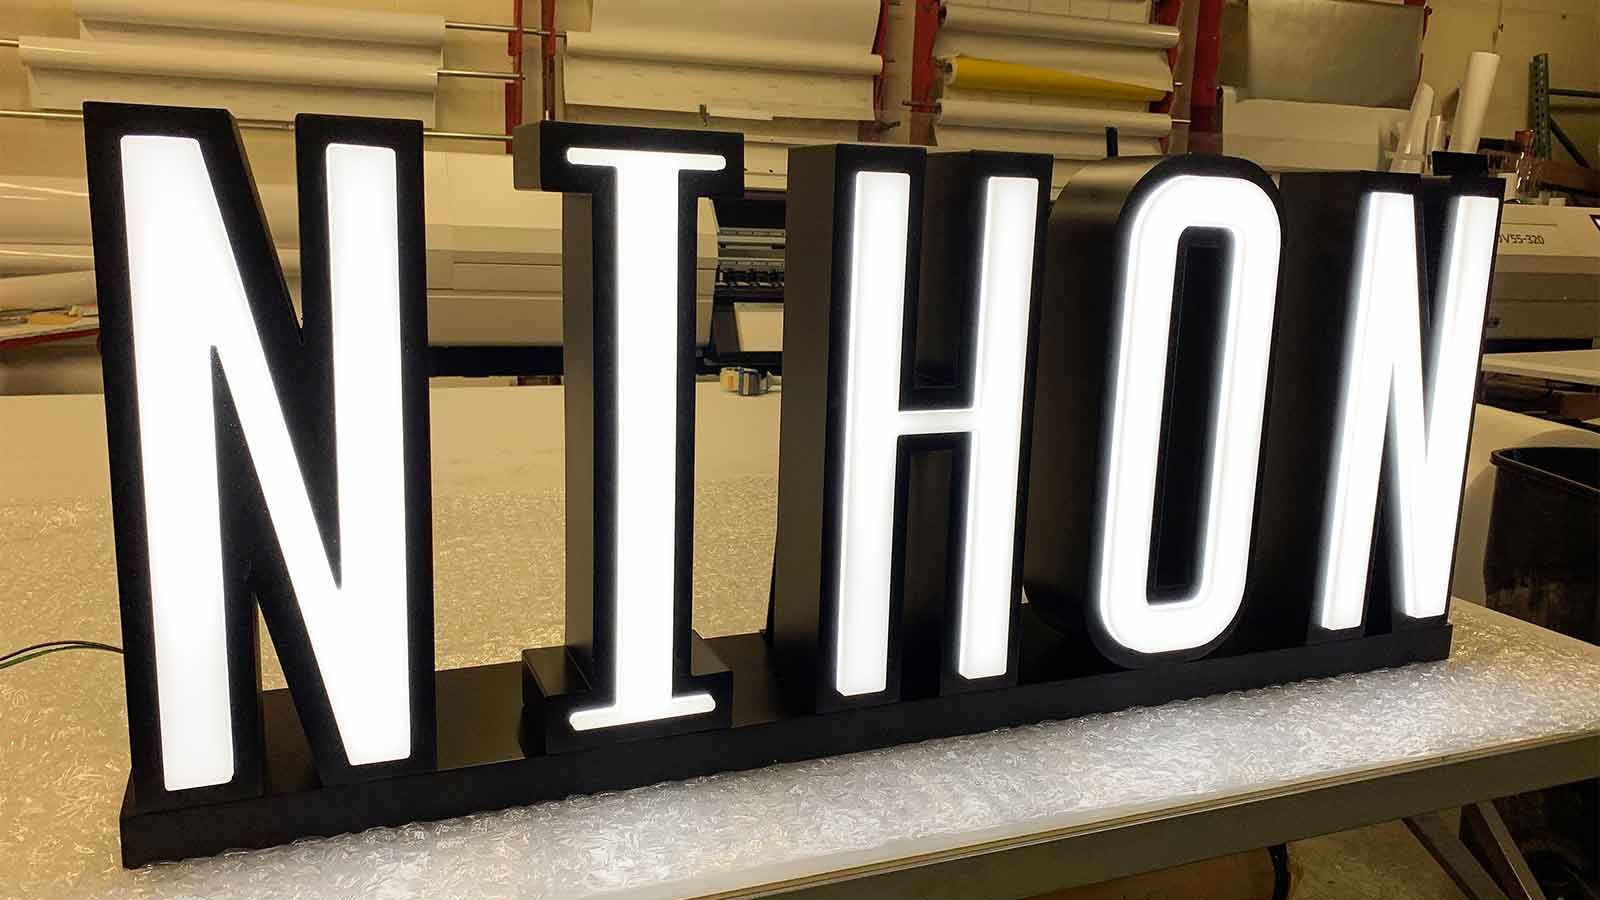 nihon frontlit 3d letters